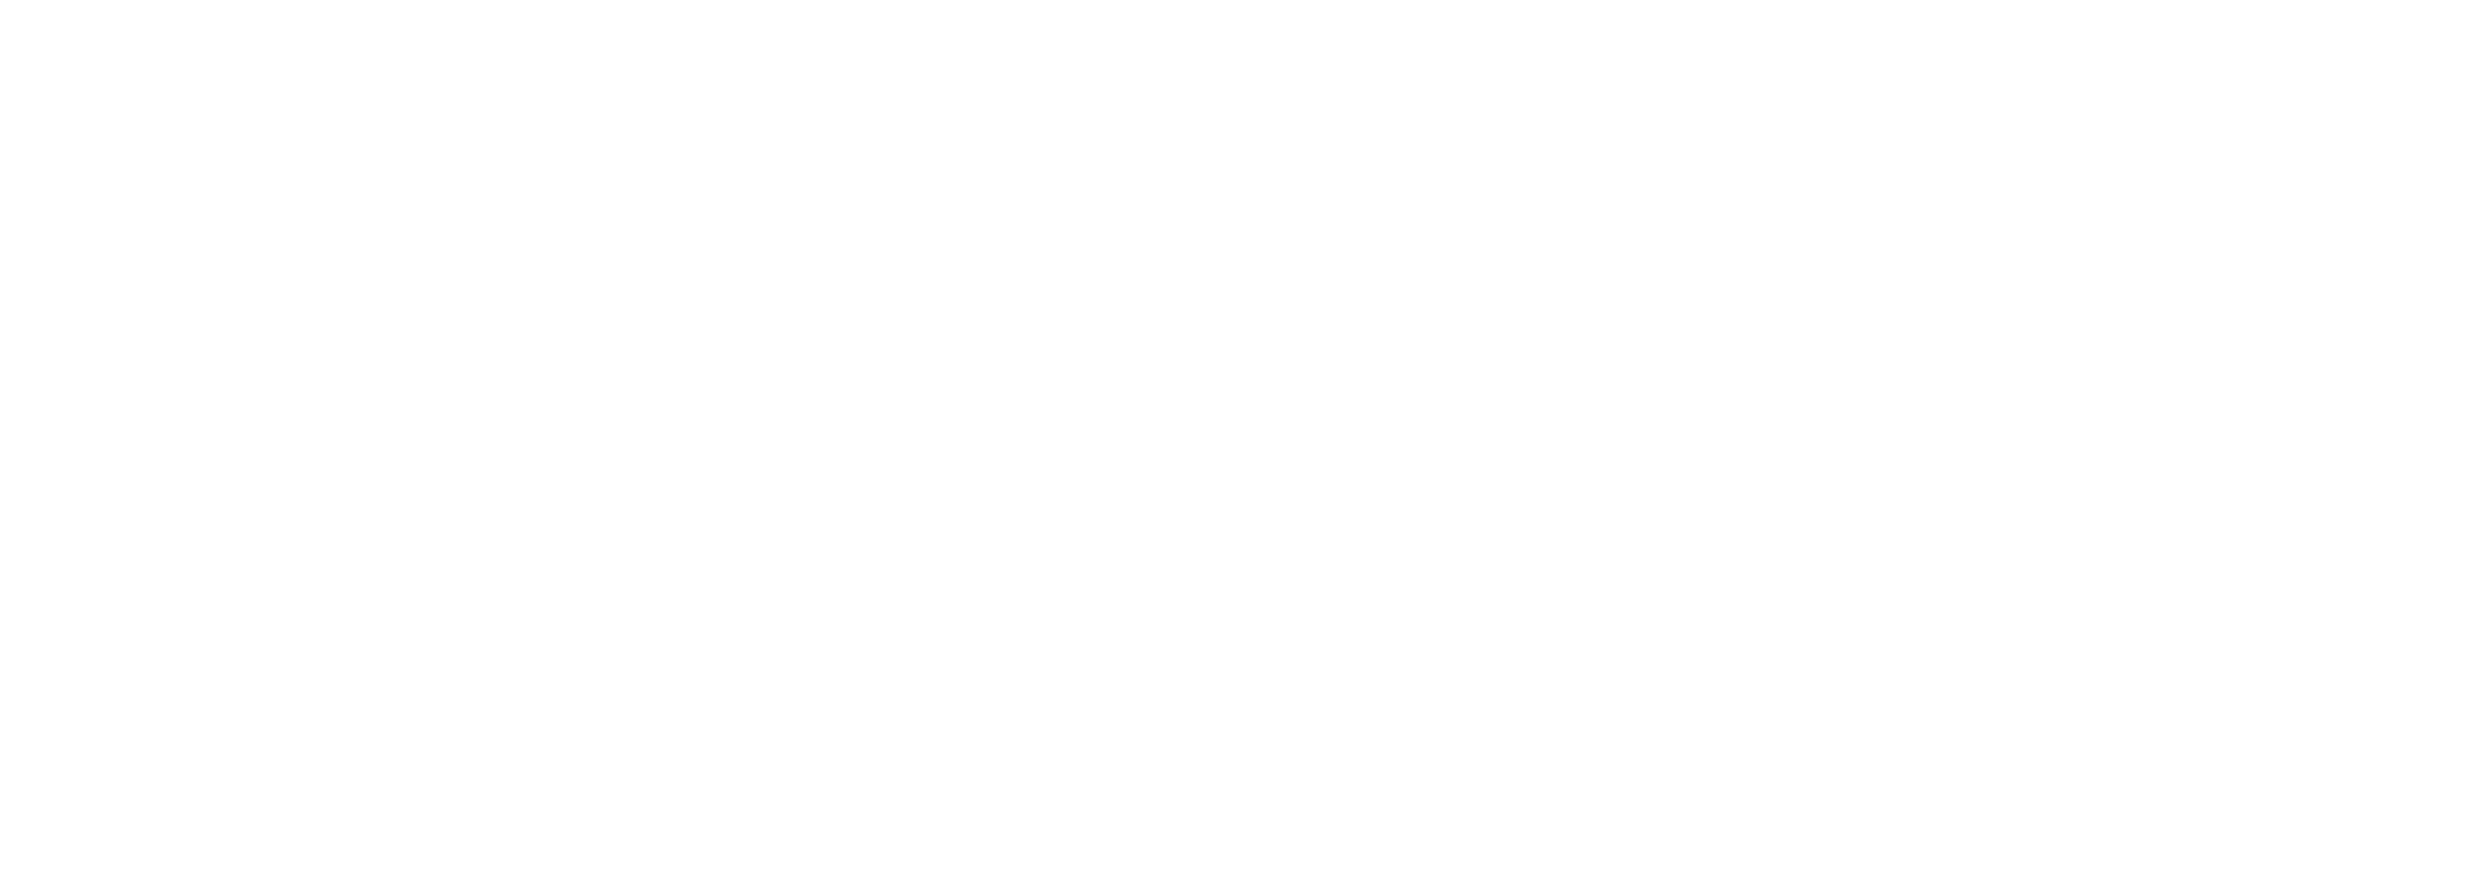 shaded u.s. navy ship font